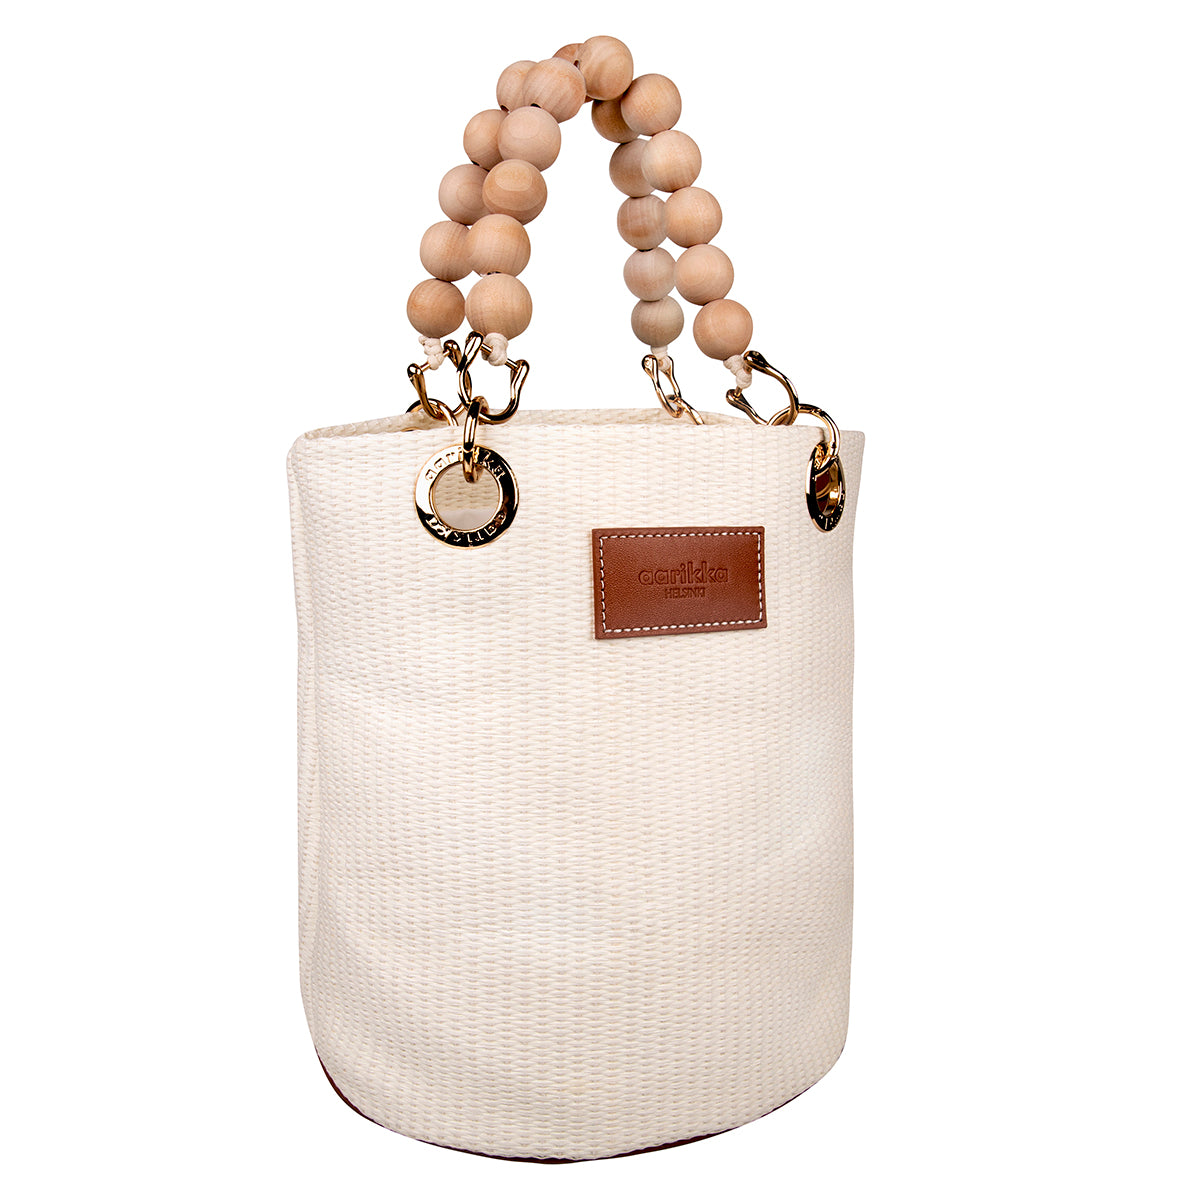 Laura basket bag, ecru and brown